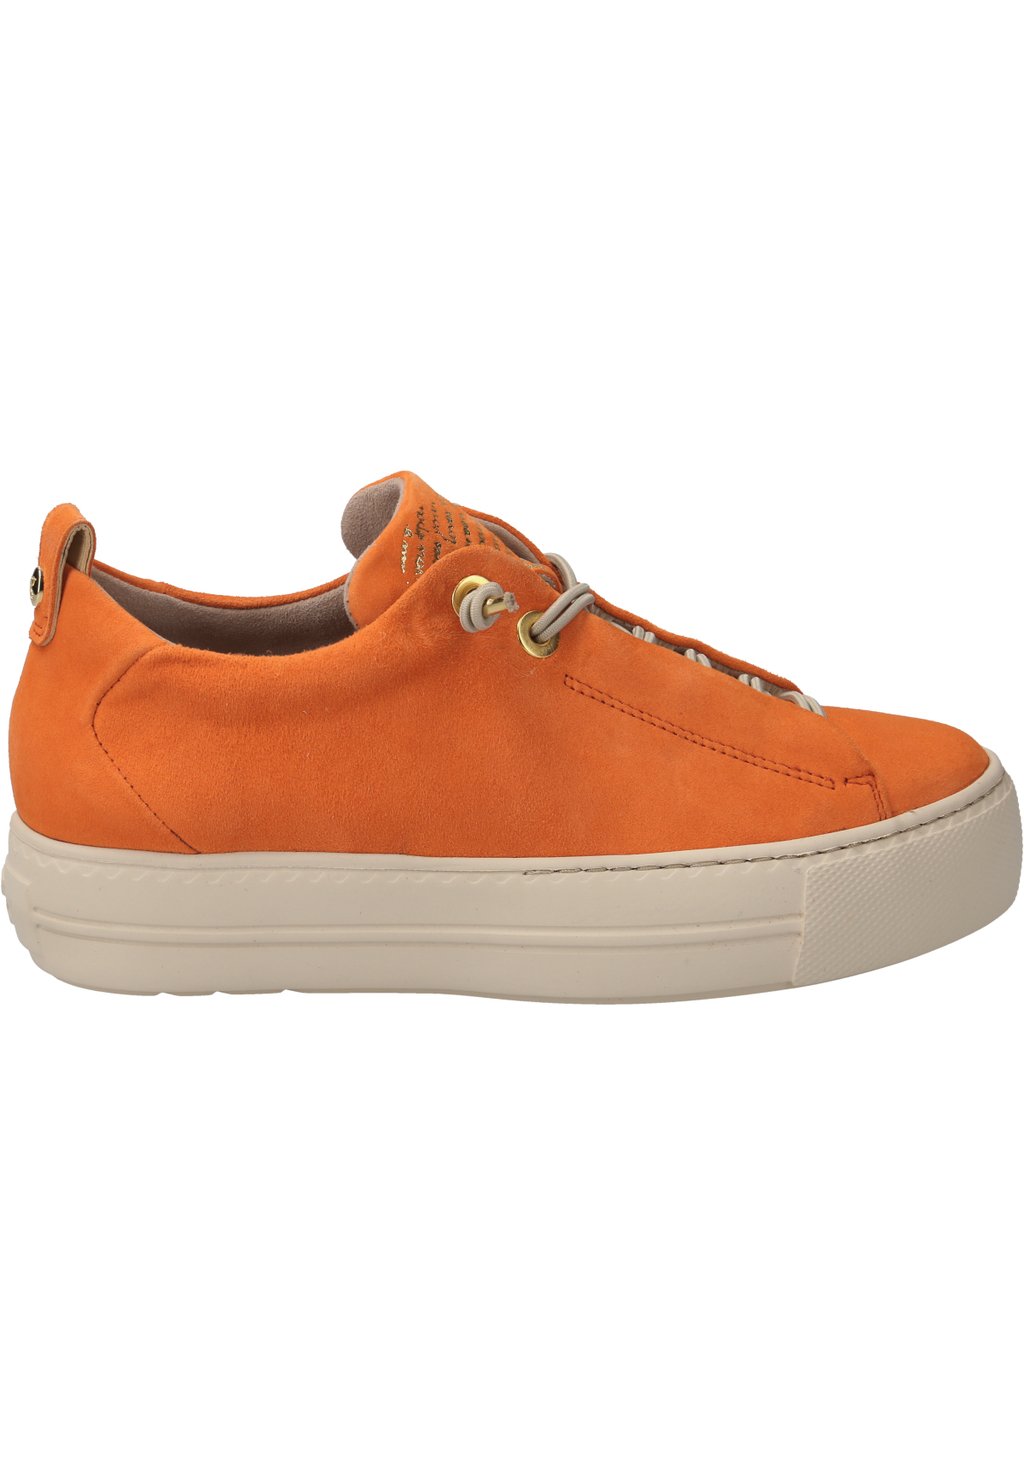 Низкие кроссовки Paul Green, оранжевые